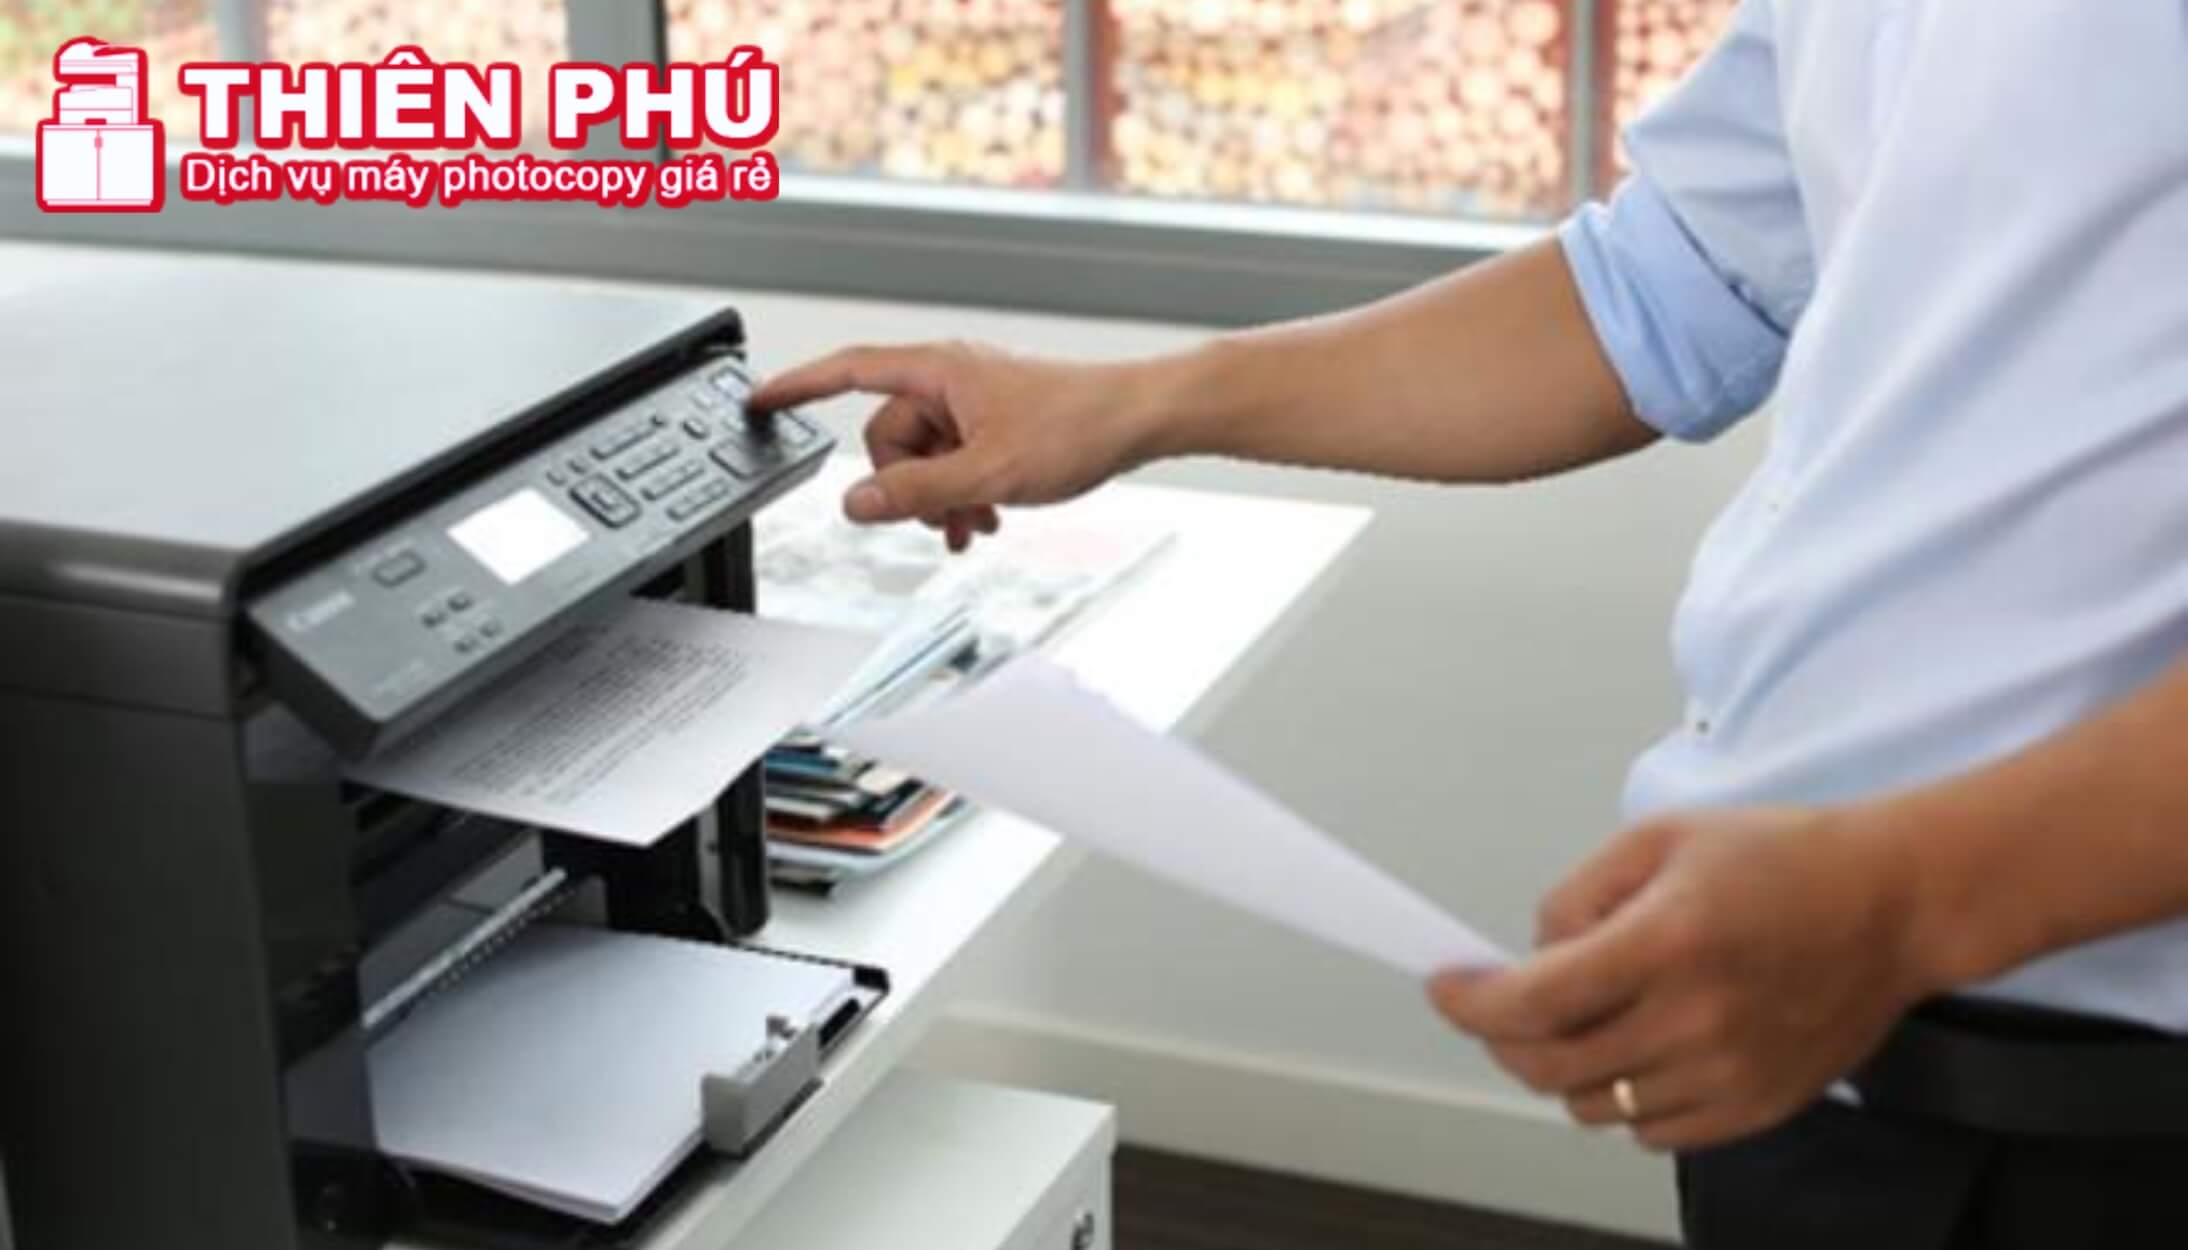 Một số lý do cần tiết kiệm giấy photocopy